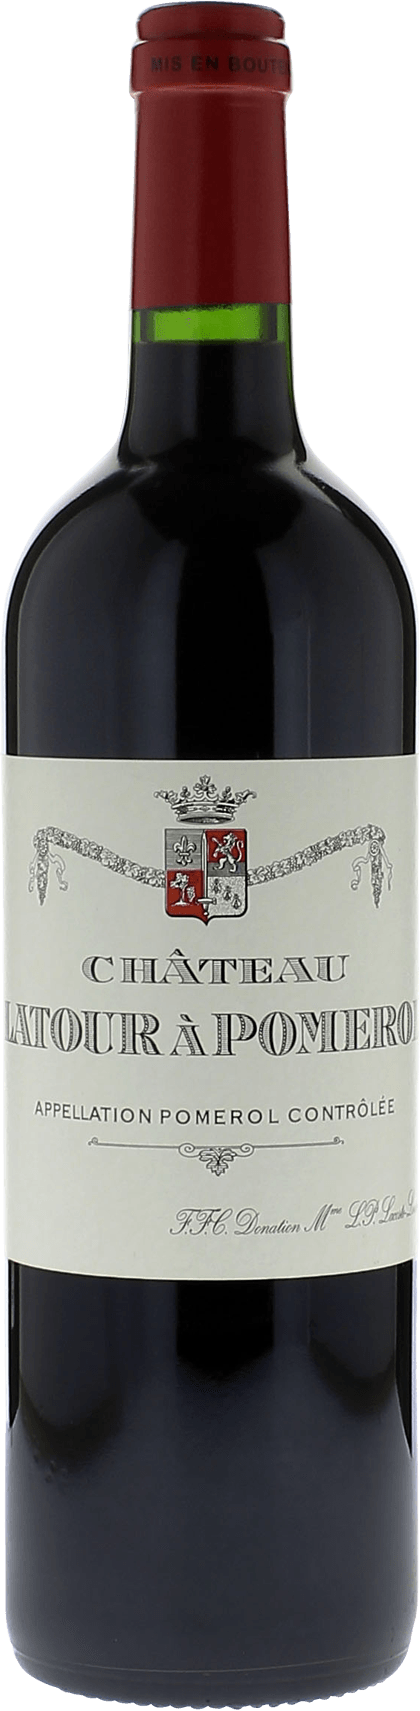 Latour  pomerol 1985  Pomerol, Bordeaux rouge